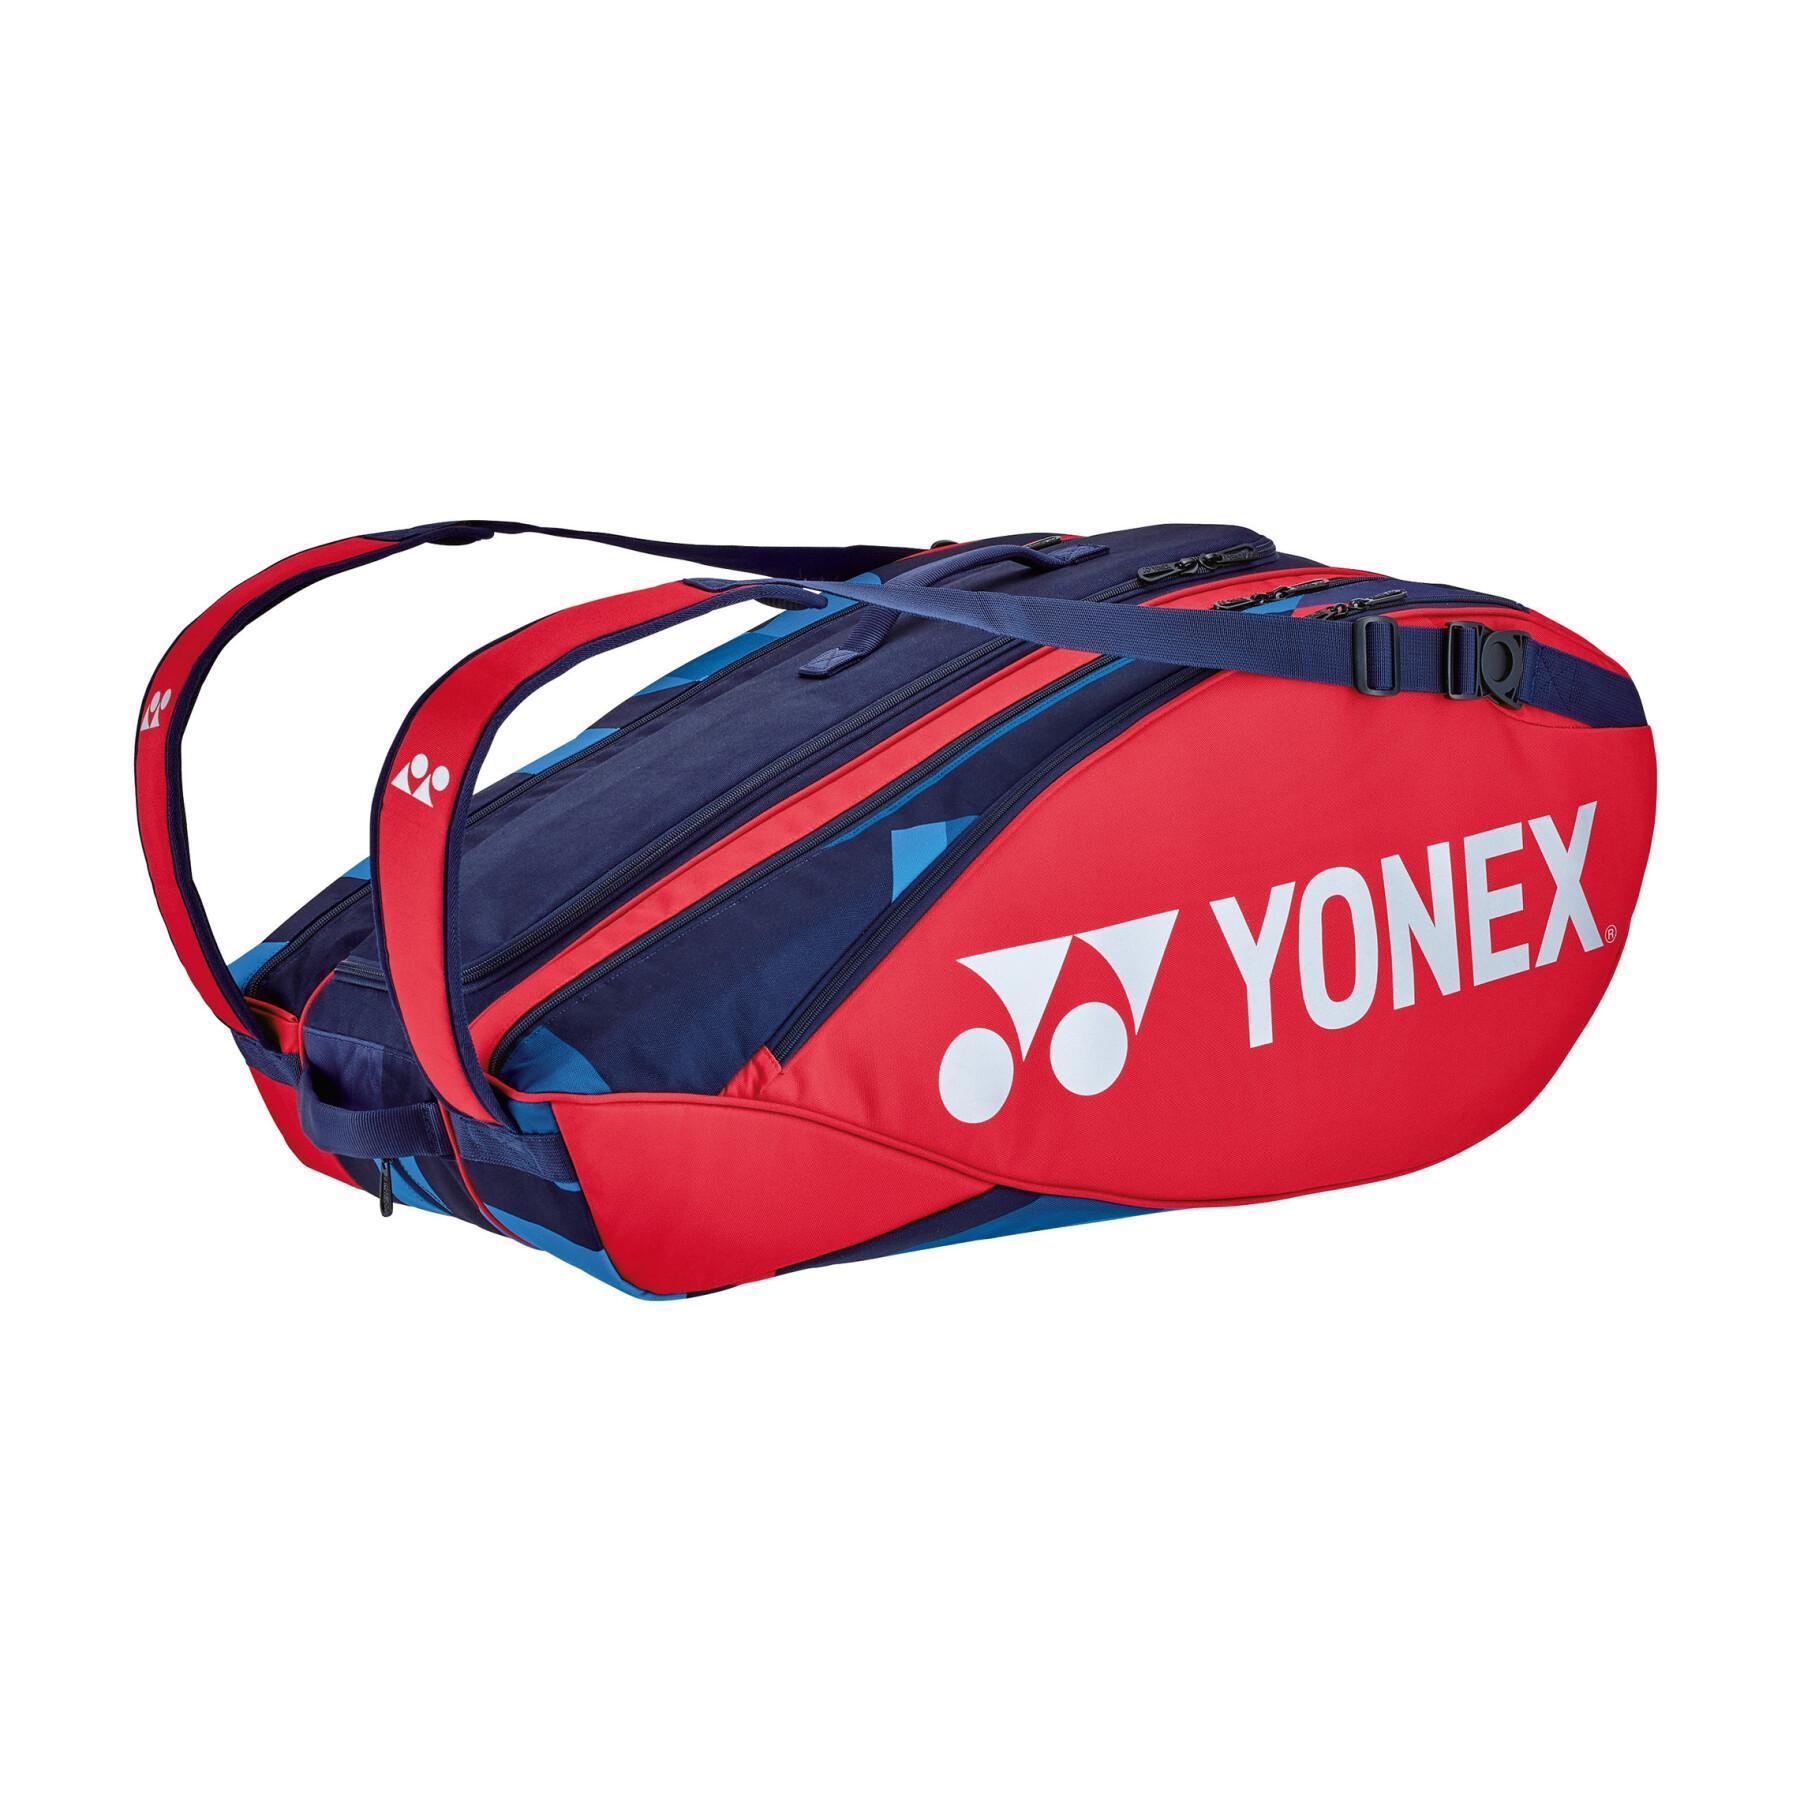 Badmintonschlägertasche Yonex Pro 92229